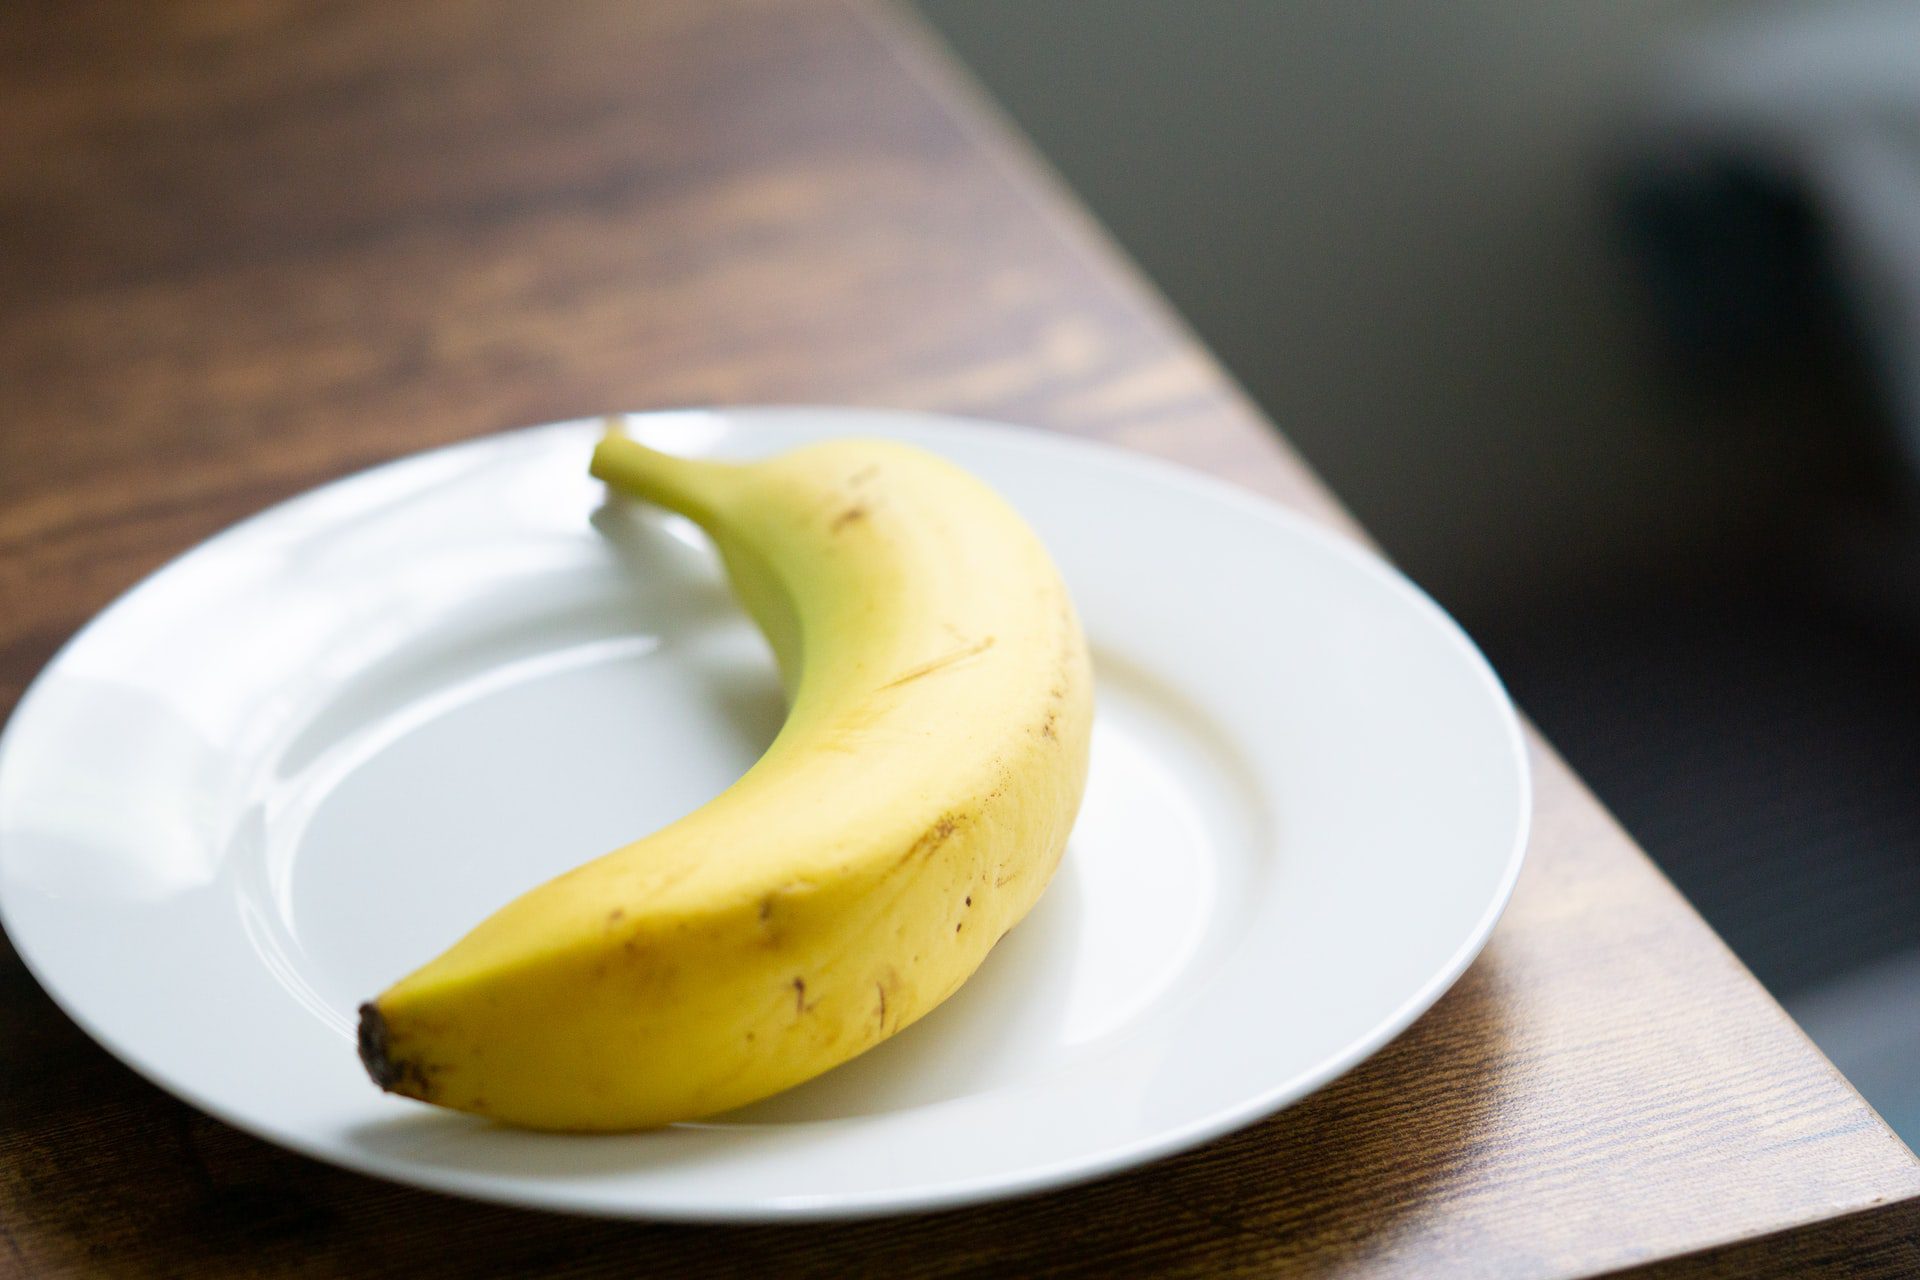 কলা খাওয়ার উপকারিতা,health benefits of banana